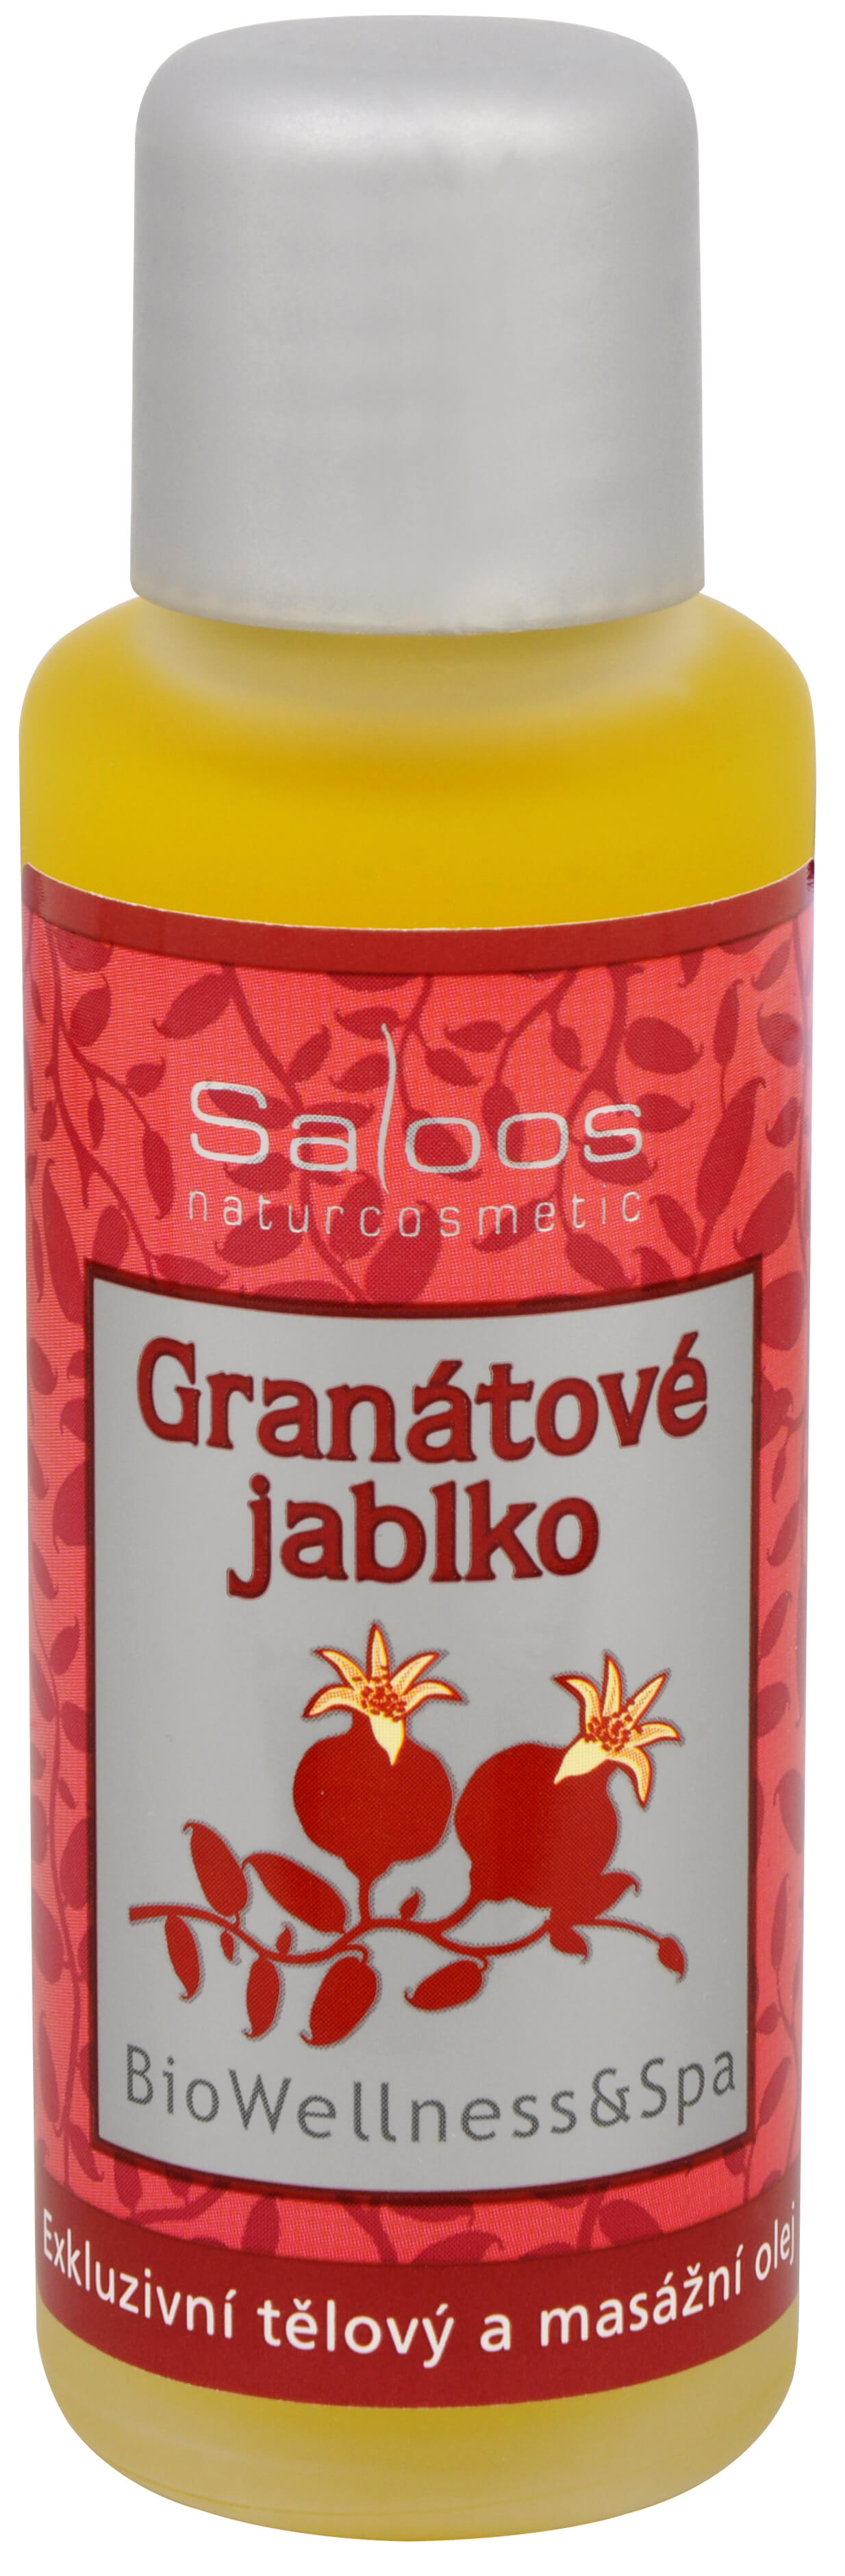 Saloos Bio Wellness exkluzivní tělový a masážní olej - Granátové jablko 50 ml